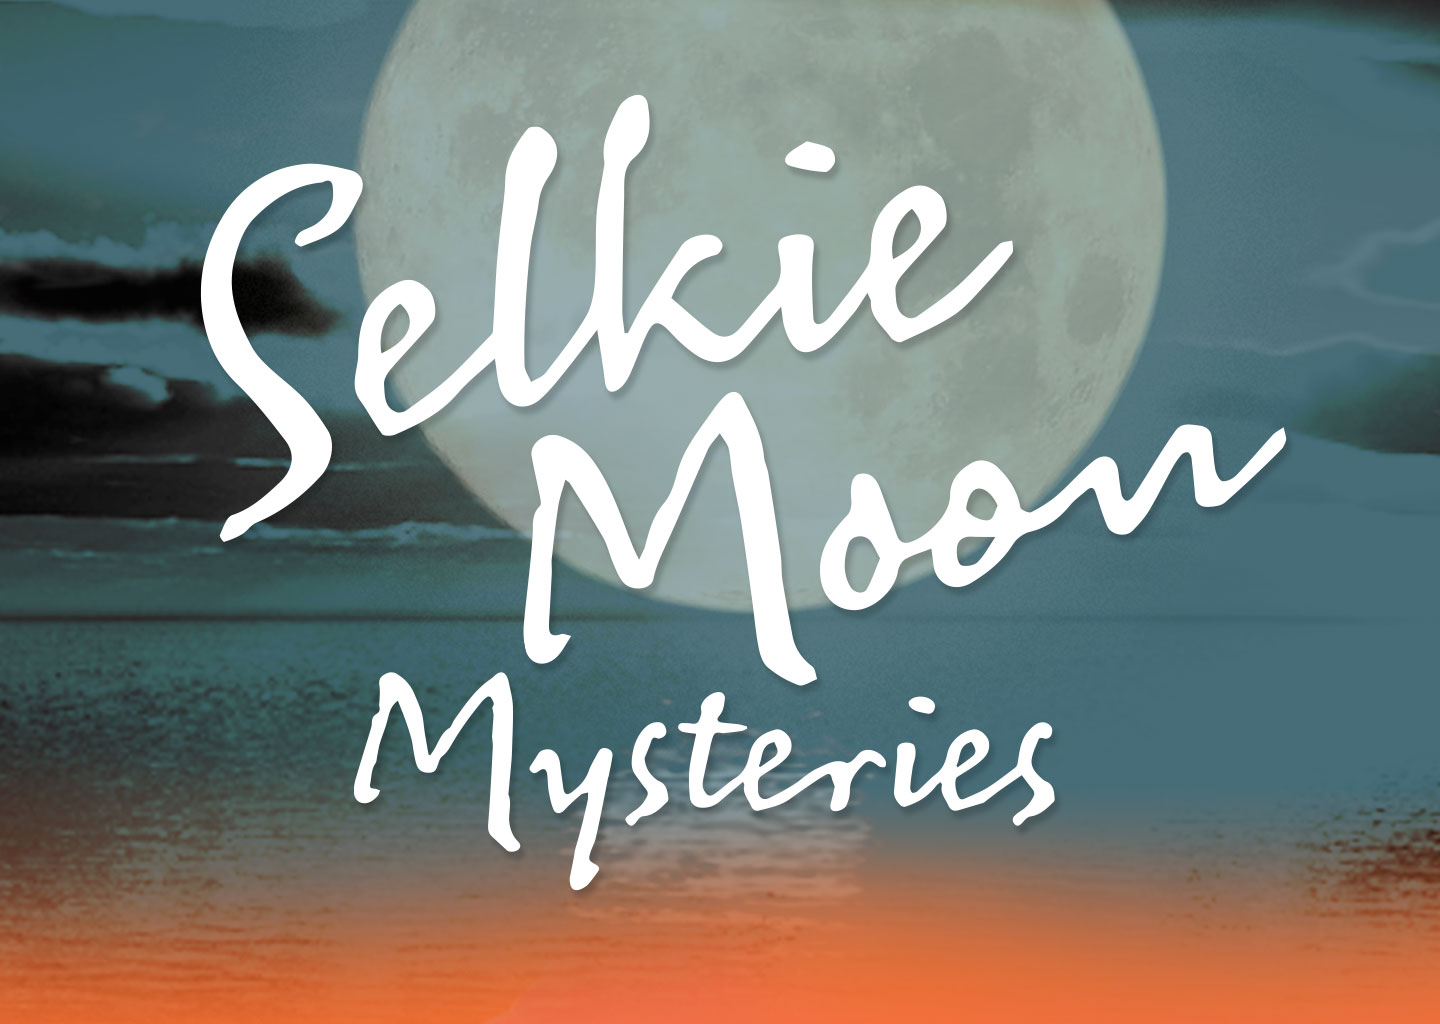 Selkie Moon Mysteries website